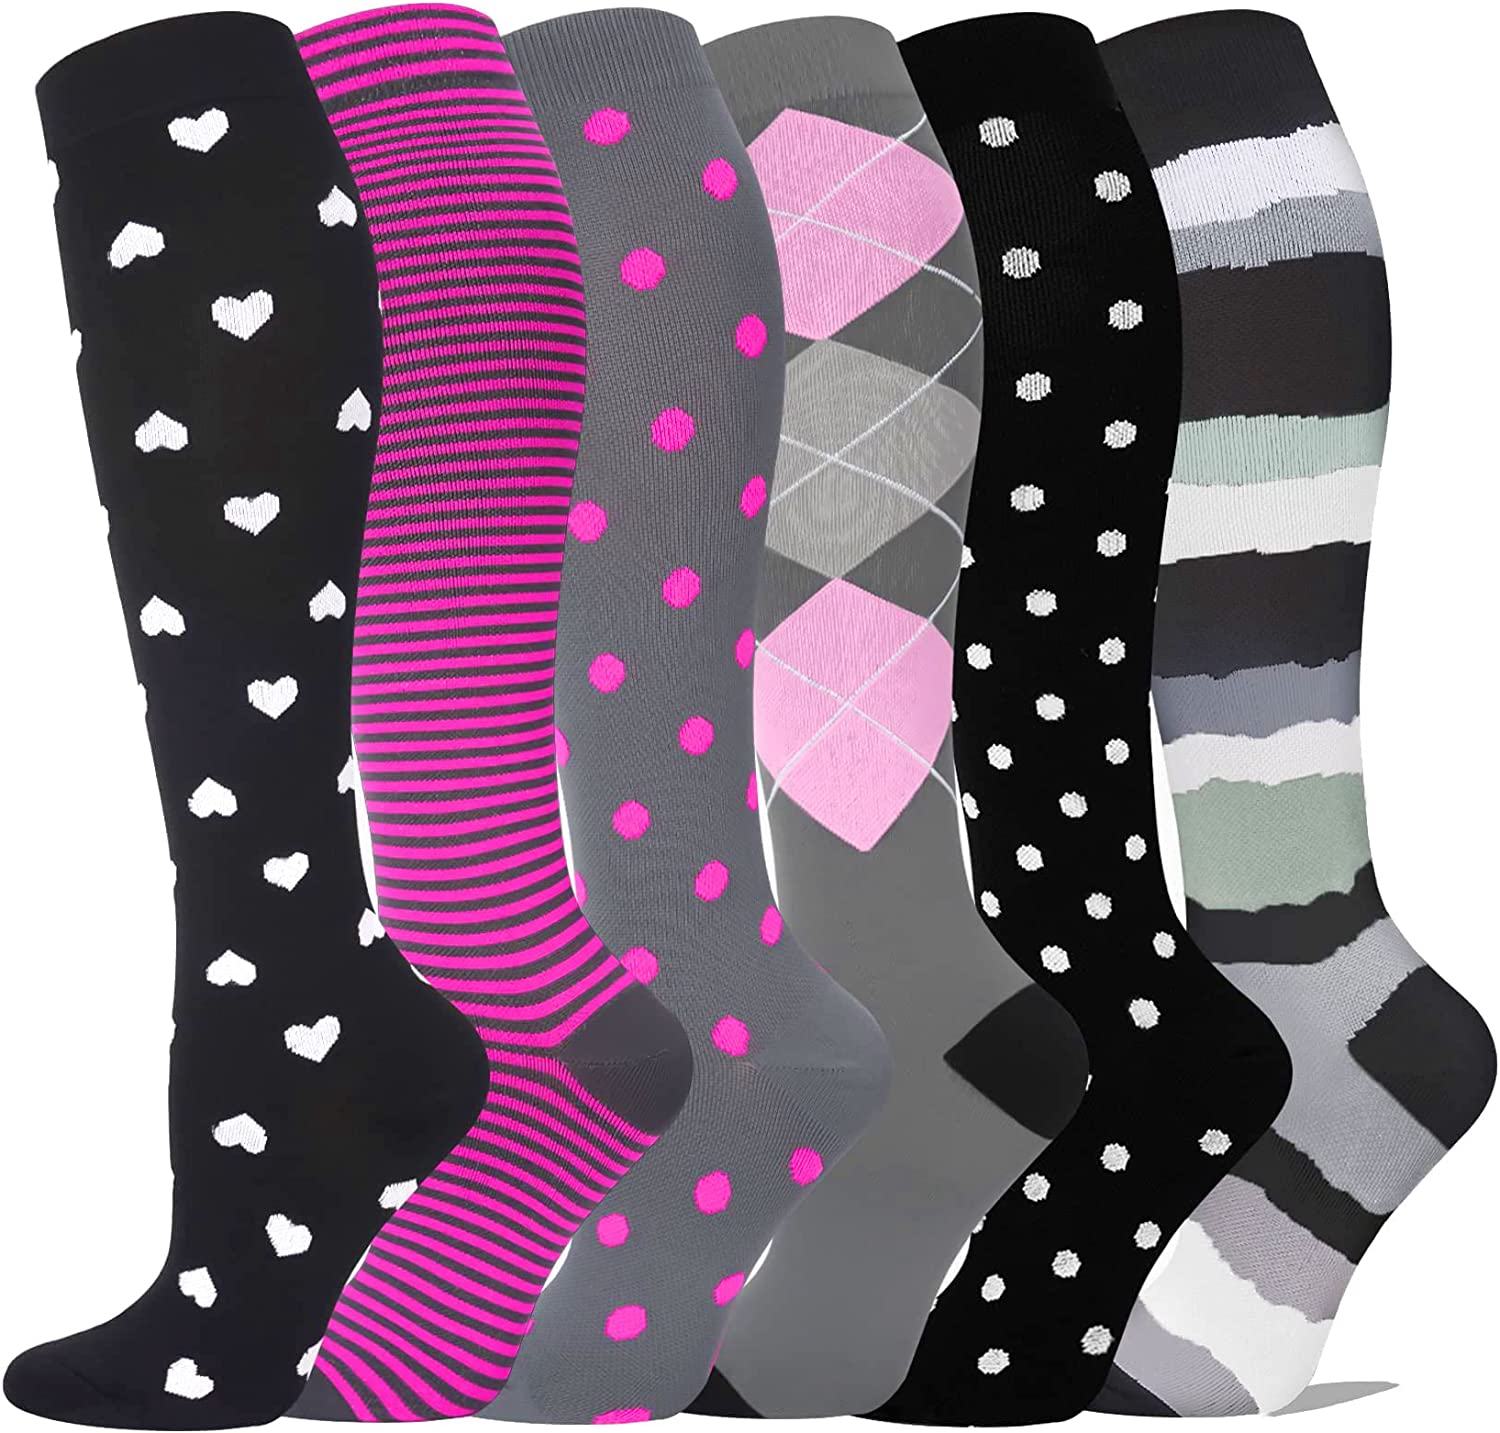 Graduated Medical Compression Socks for Women&Men 20